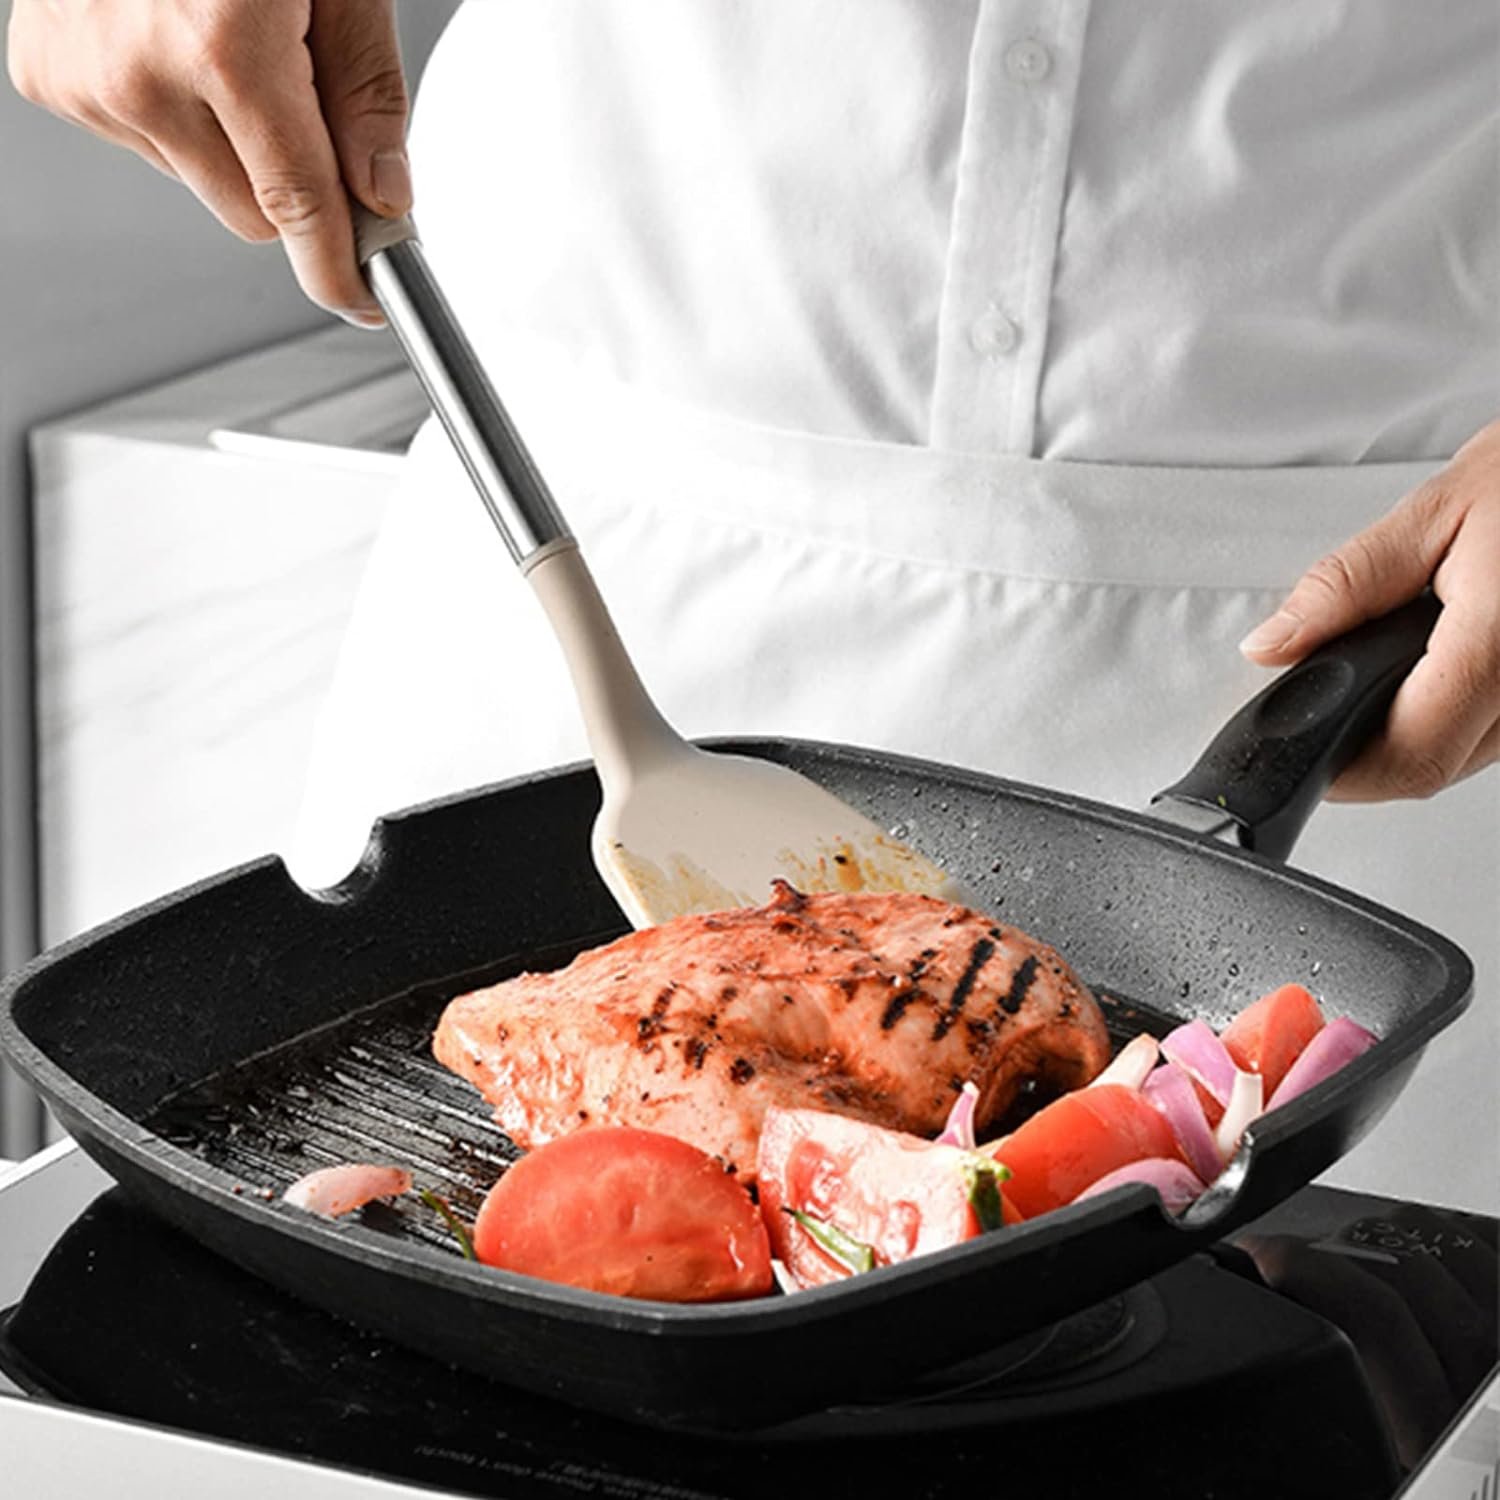 Keidason Kitchen Cooking Utensils Se, 12-piece Non-stick Silicone Kitchen Utensils Sets Heat-resistant, BPA-Free,Stirring Kitchen Tool Set -Khaki